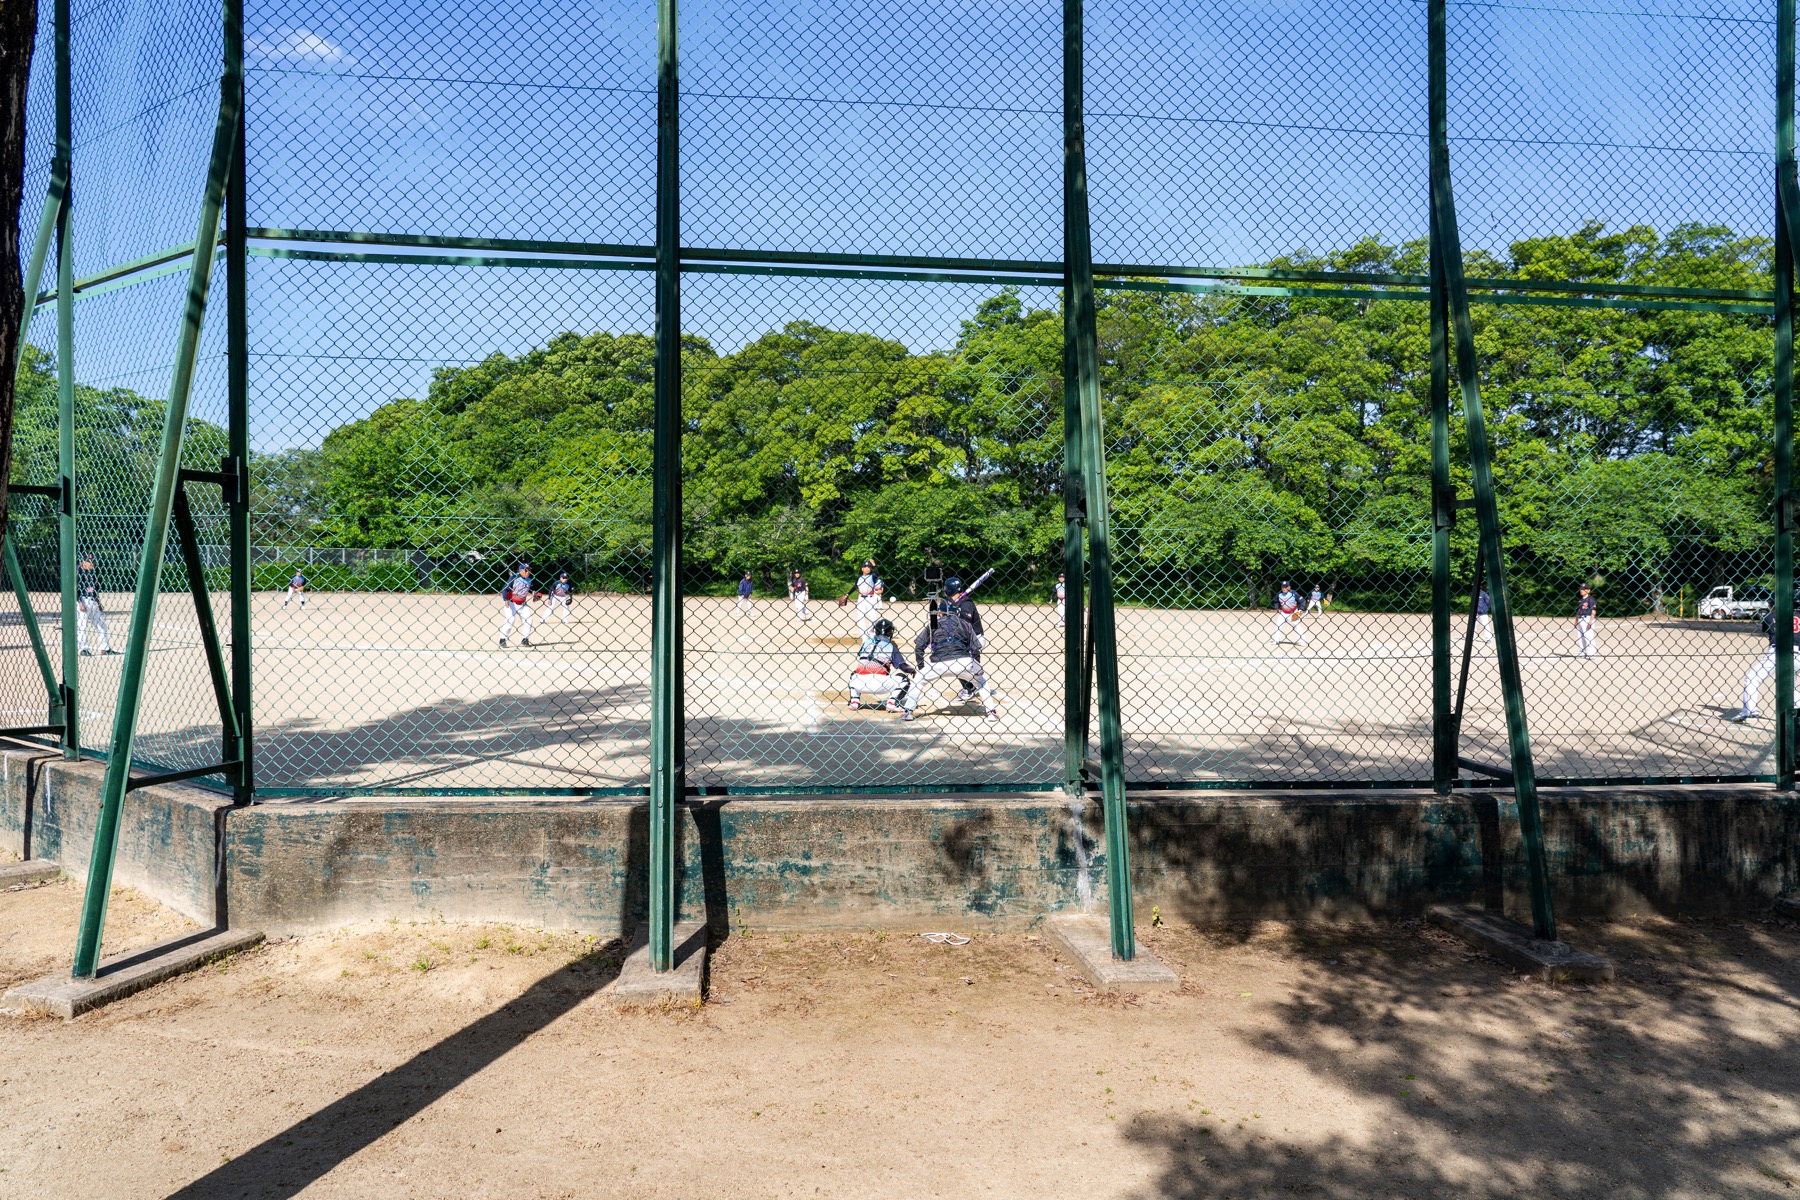 酒津公園 野球グラウンドでソフトボールの試合をしている方々